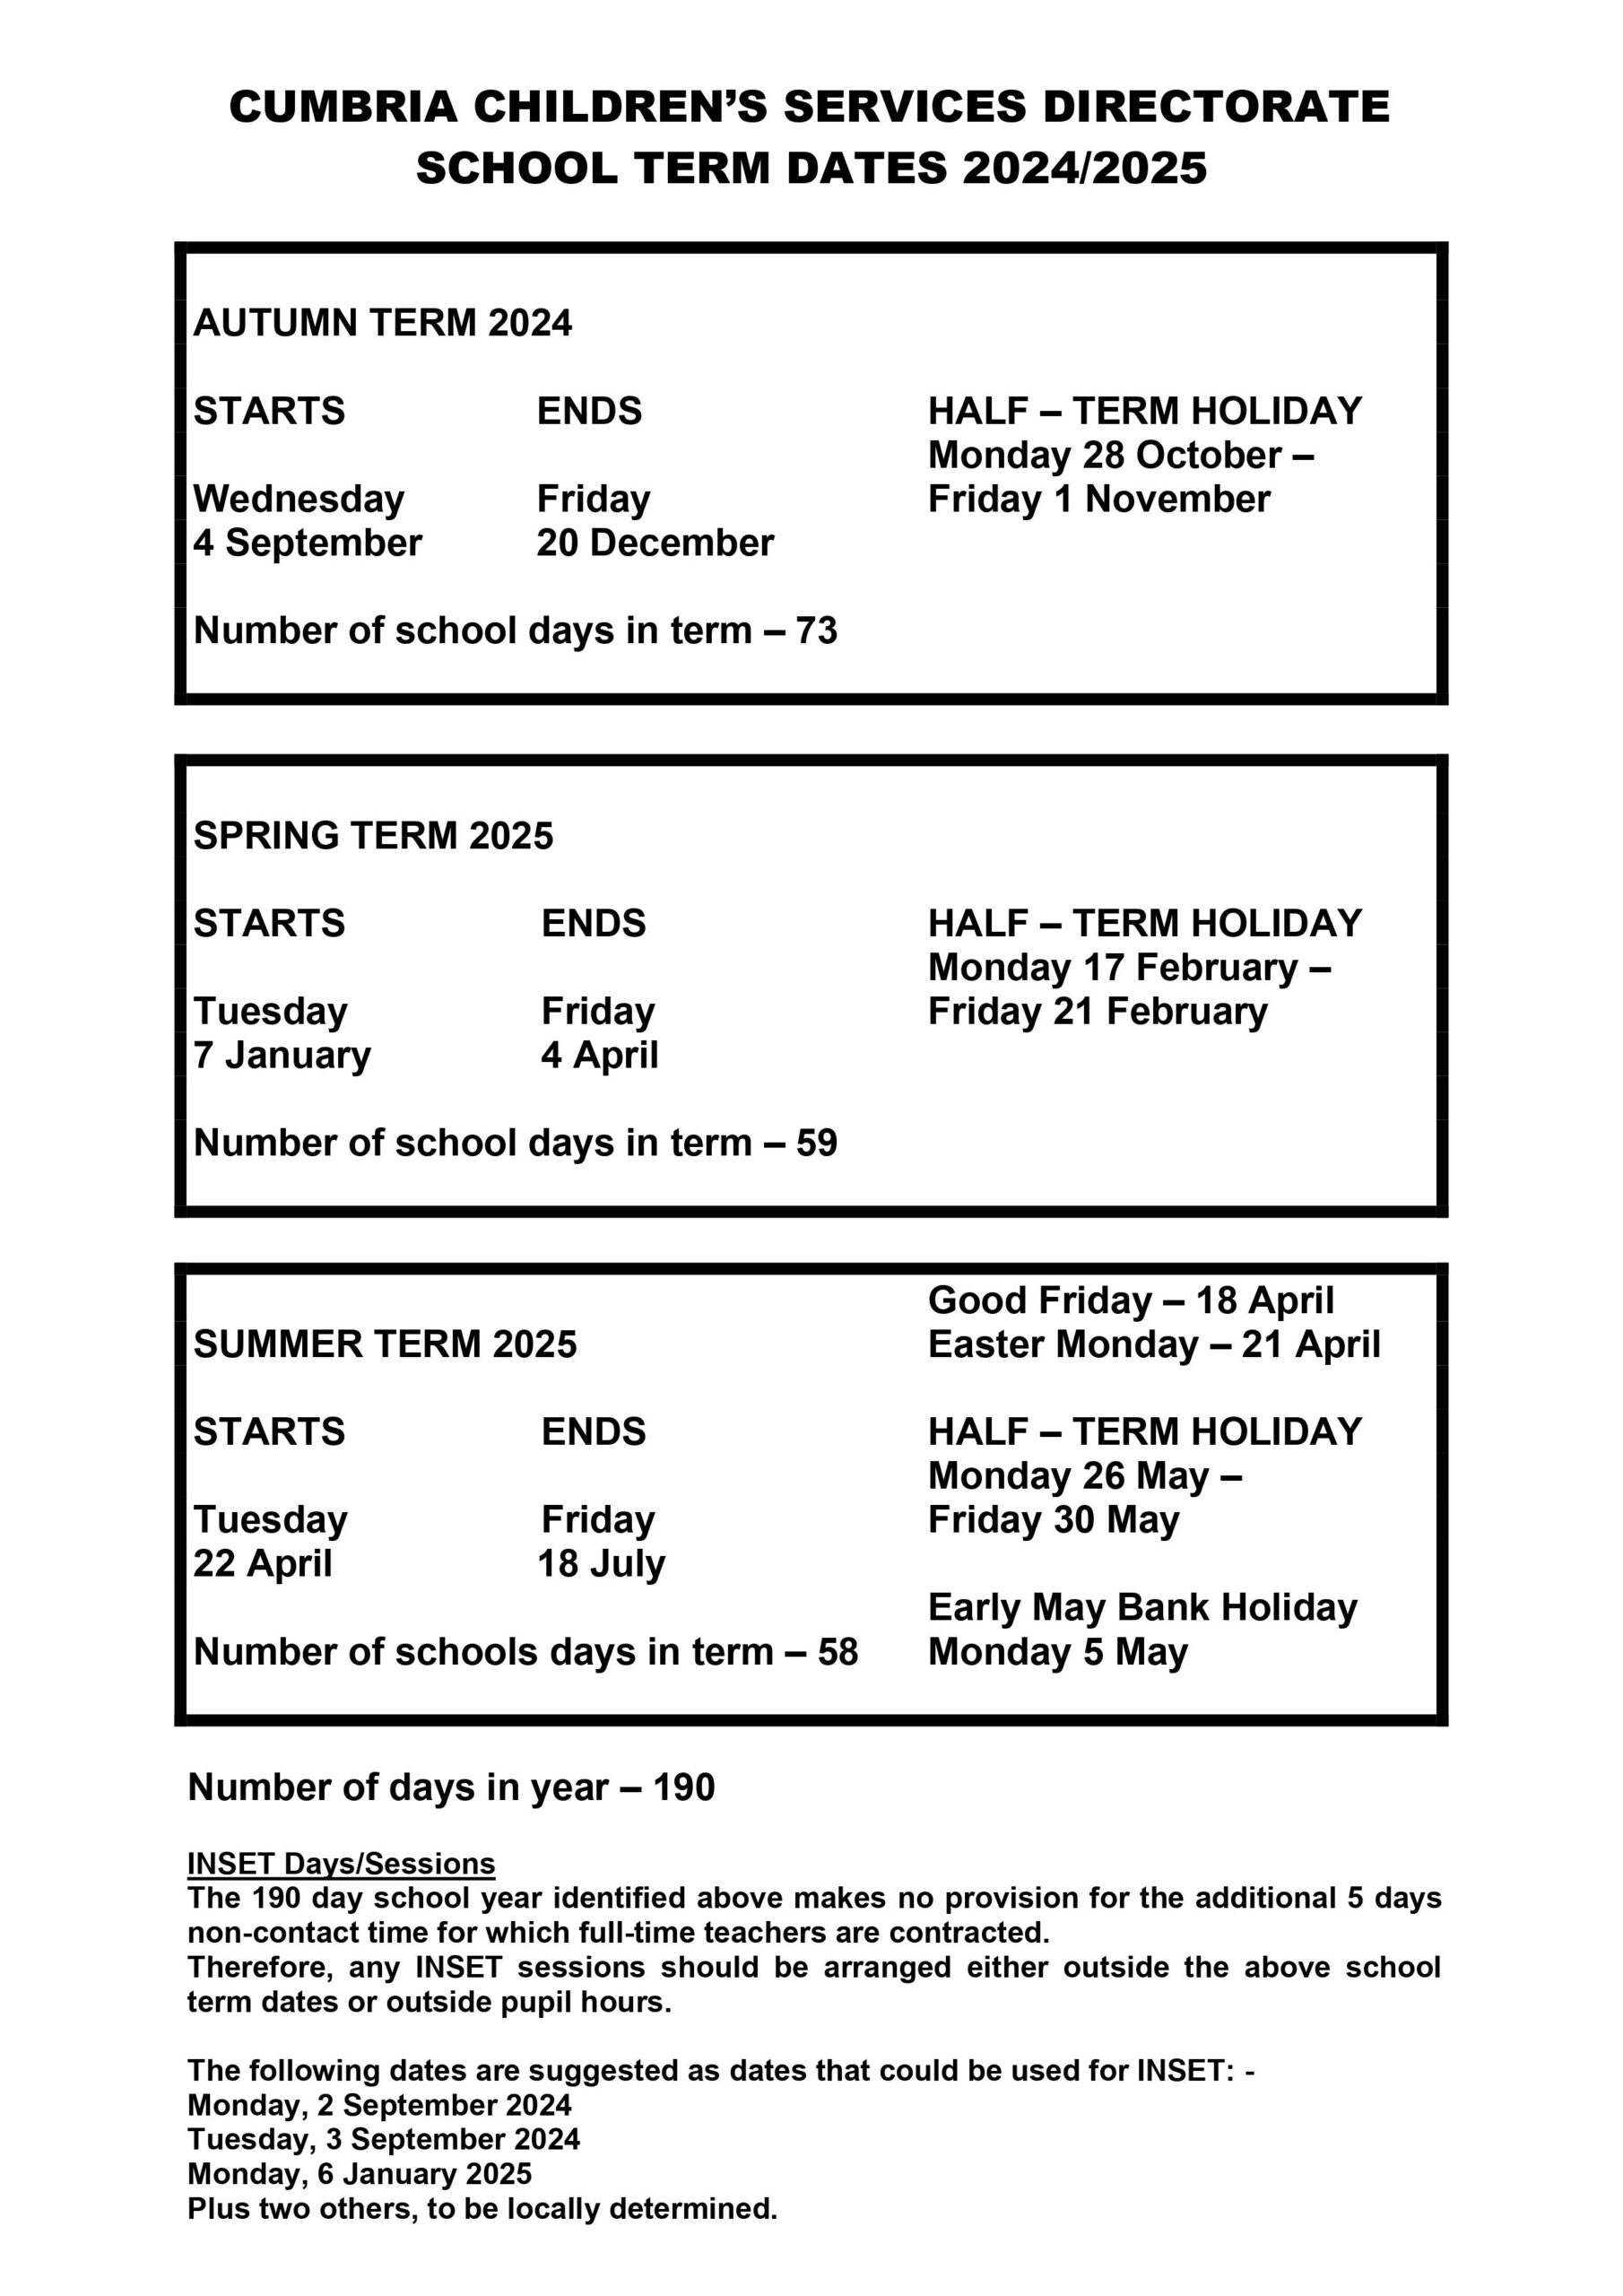 School Term Dates Solway Community School